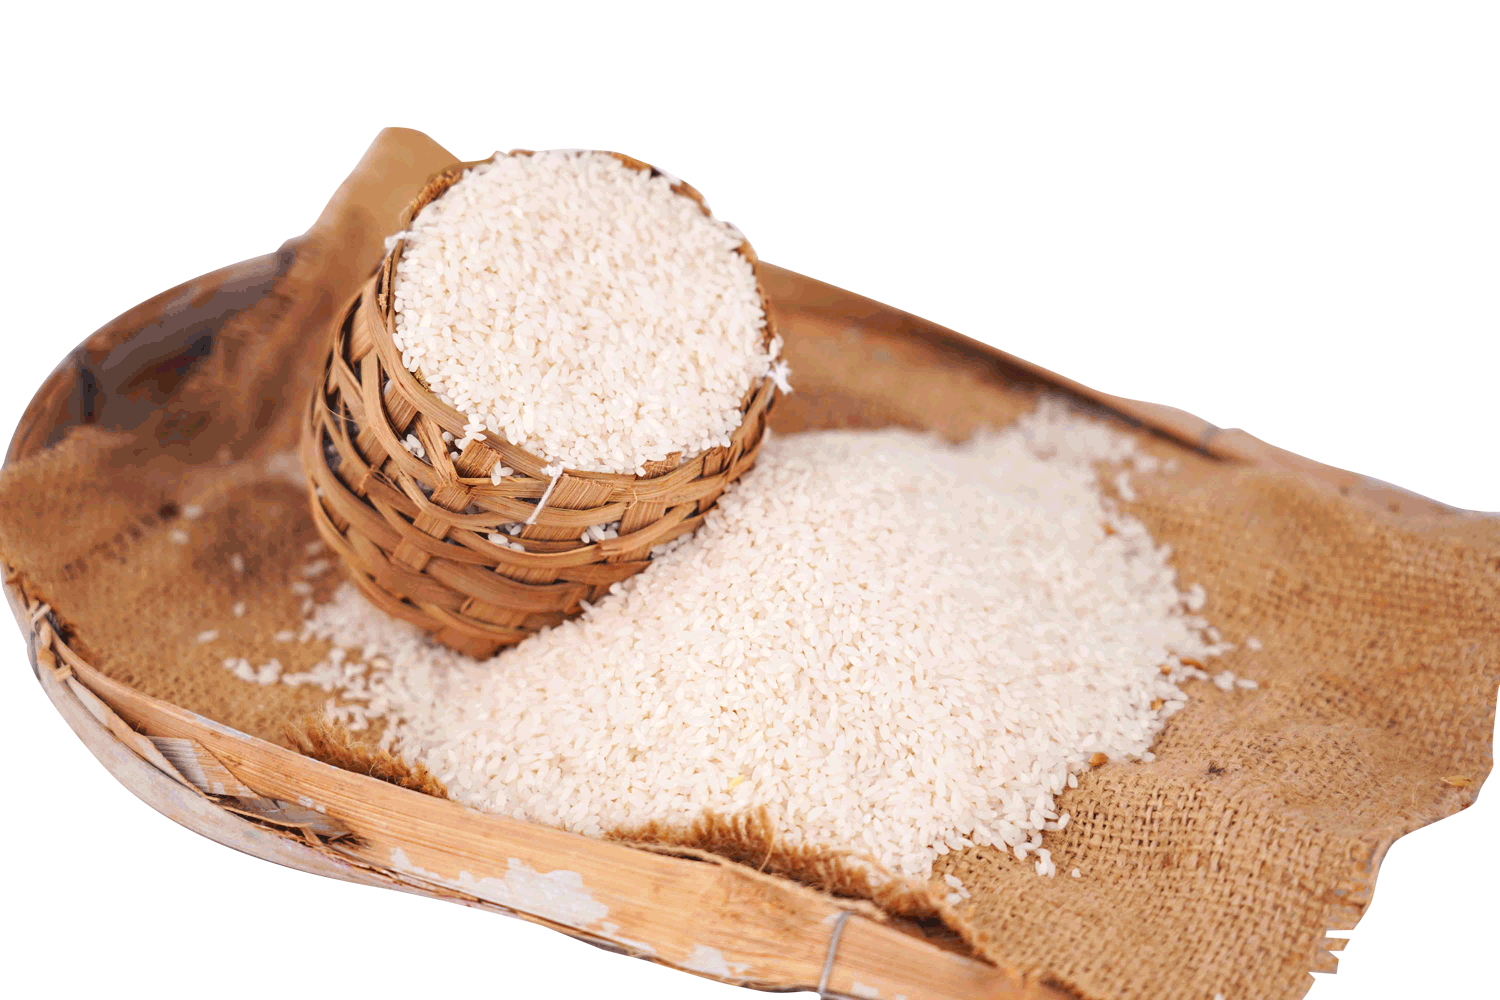 Gobindobhog Rice